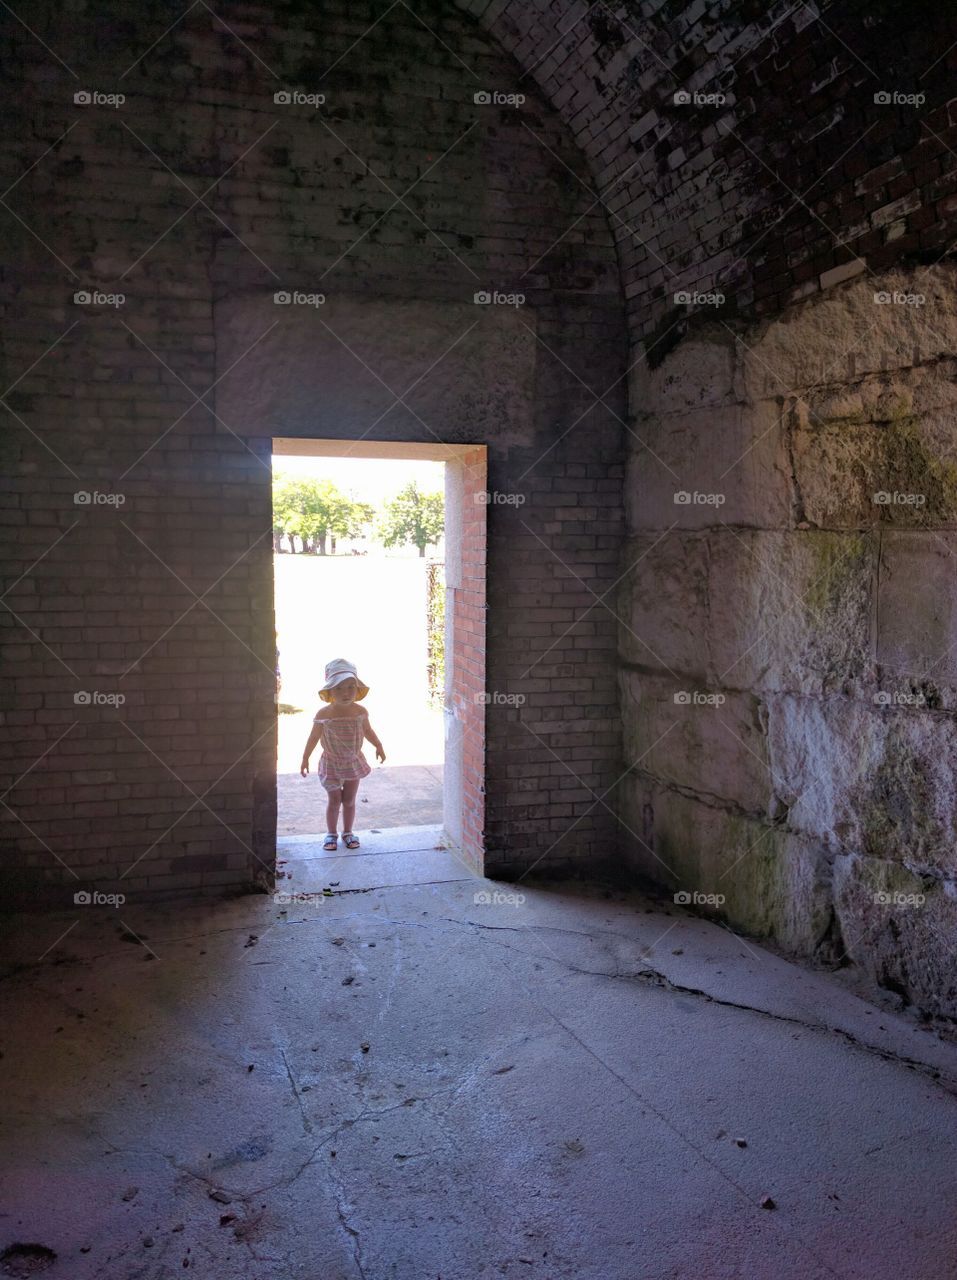 Little Human in a Doorway